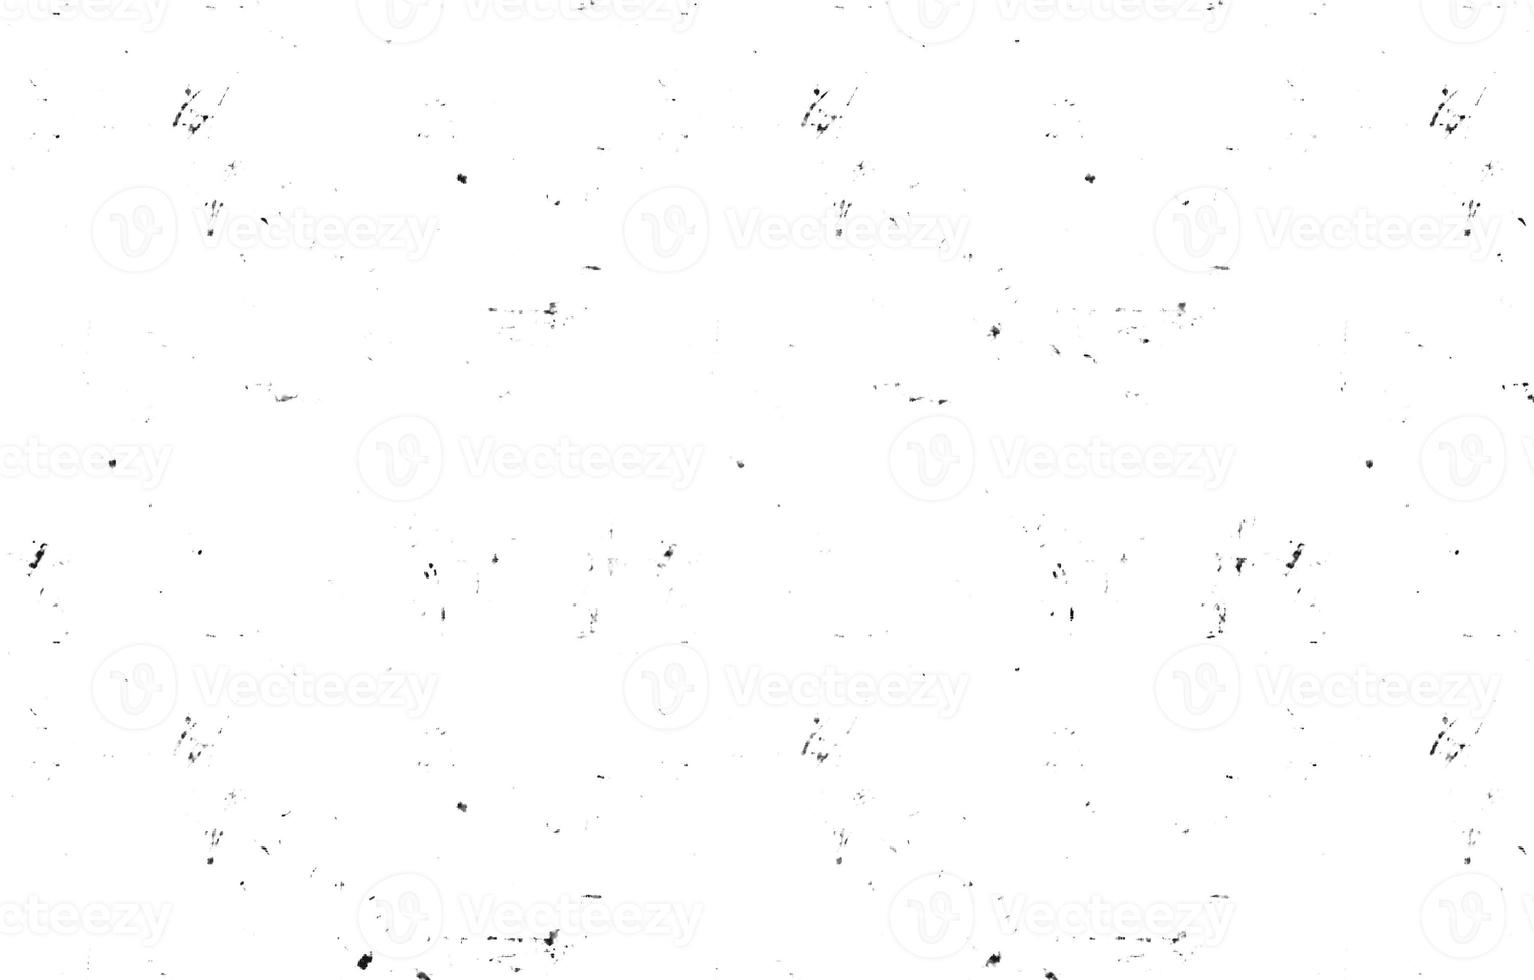 grunge texture.grunge textuur background.grainy abstracte textuur op een witte background.highly gedetailleerde grunge achtergrond met ruimte. foto